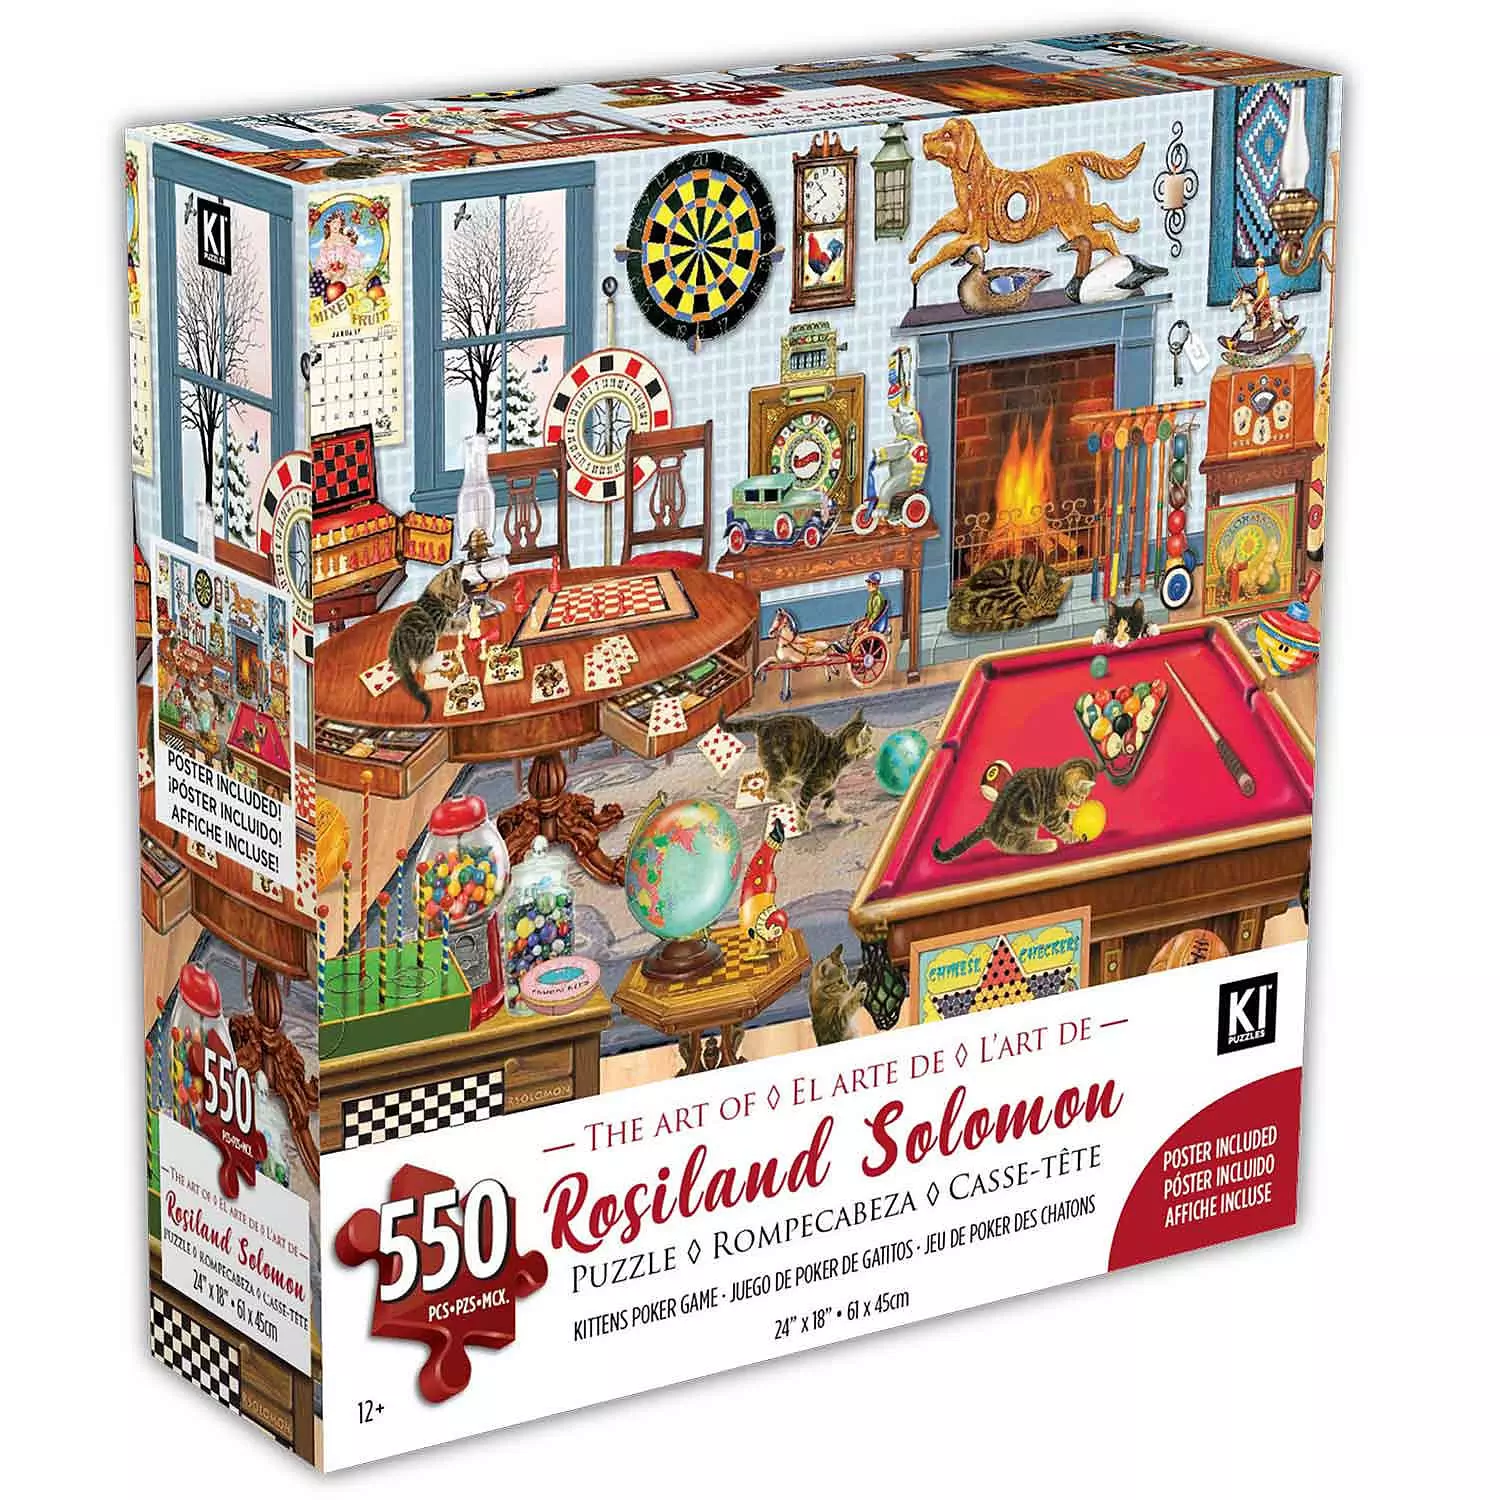 KI - Puzzle, Rosiland Solomon, Kittens Poker Game,550 pcs